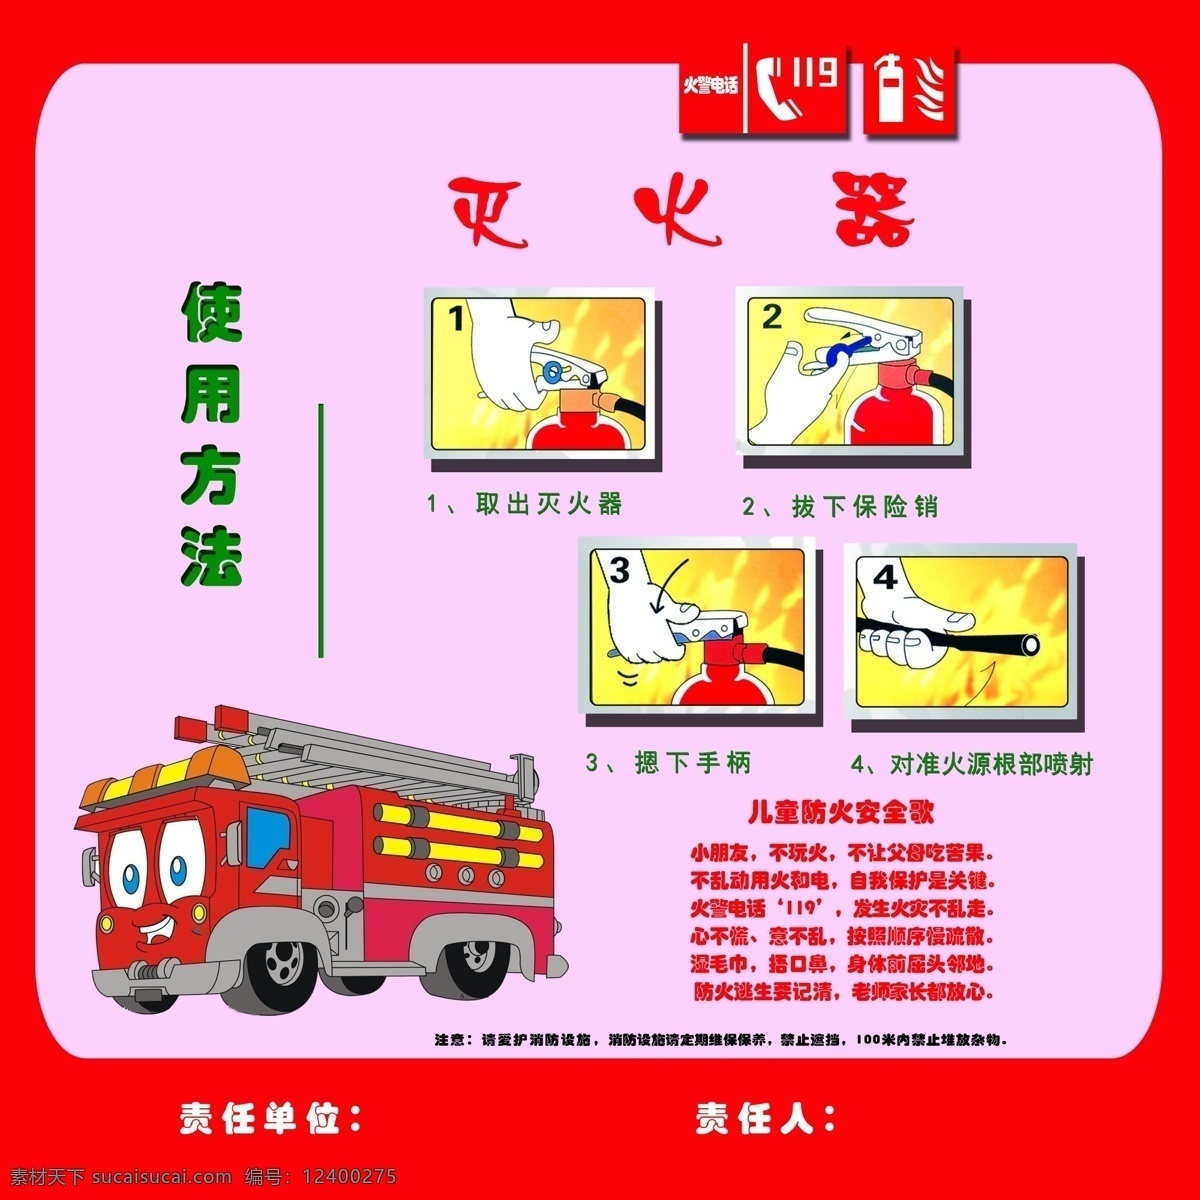 消防 设施 海报 dm宣传单 安全 公共标识 小学 校园 宣传 幼儿园 宣传海报 宣传单 彩页 dm